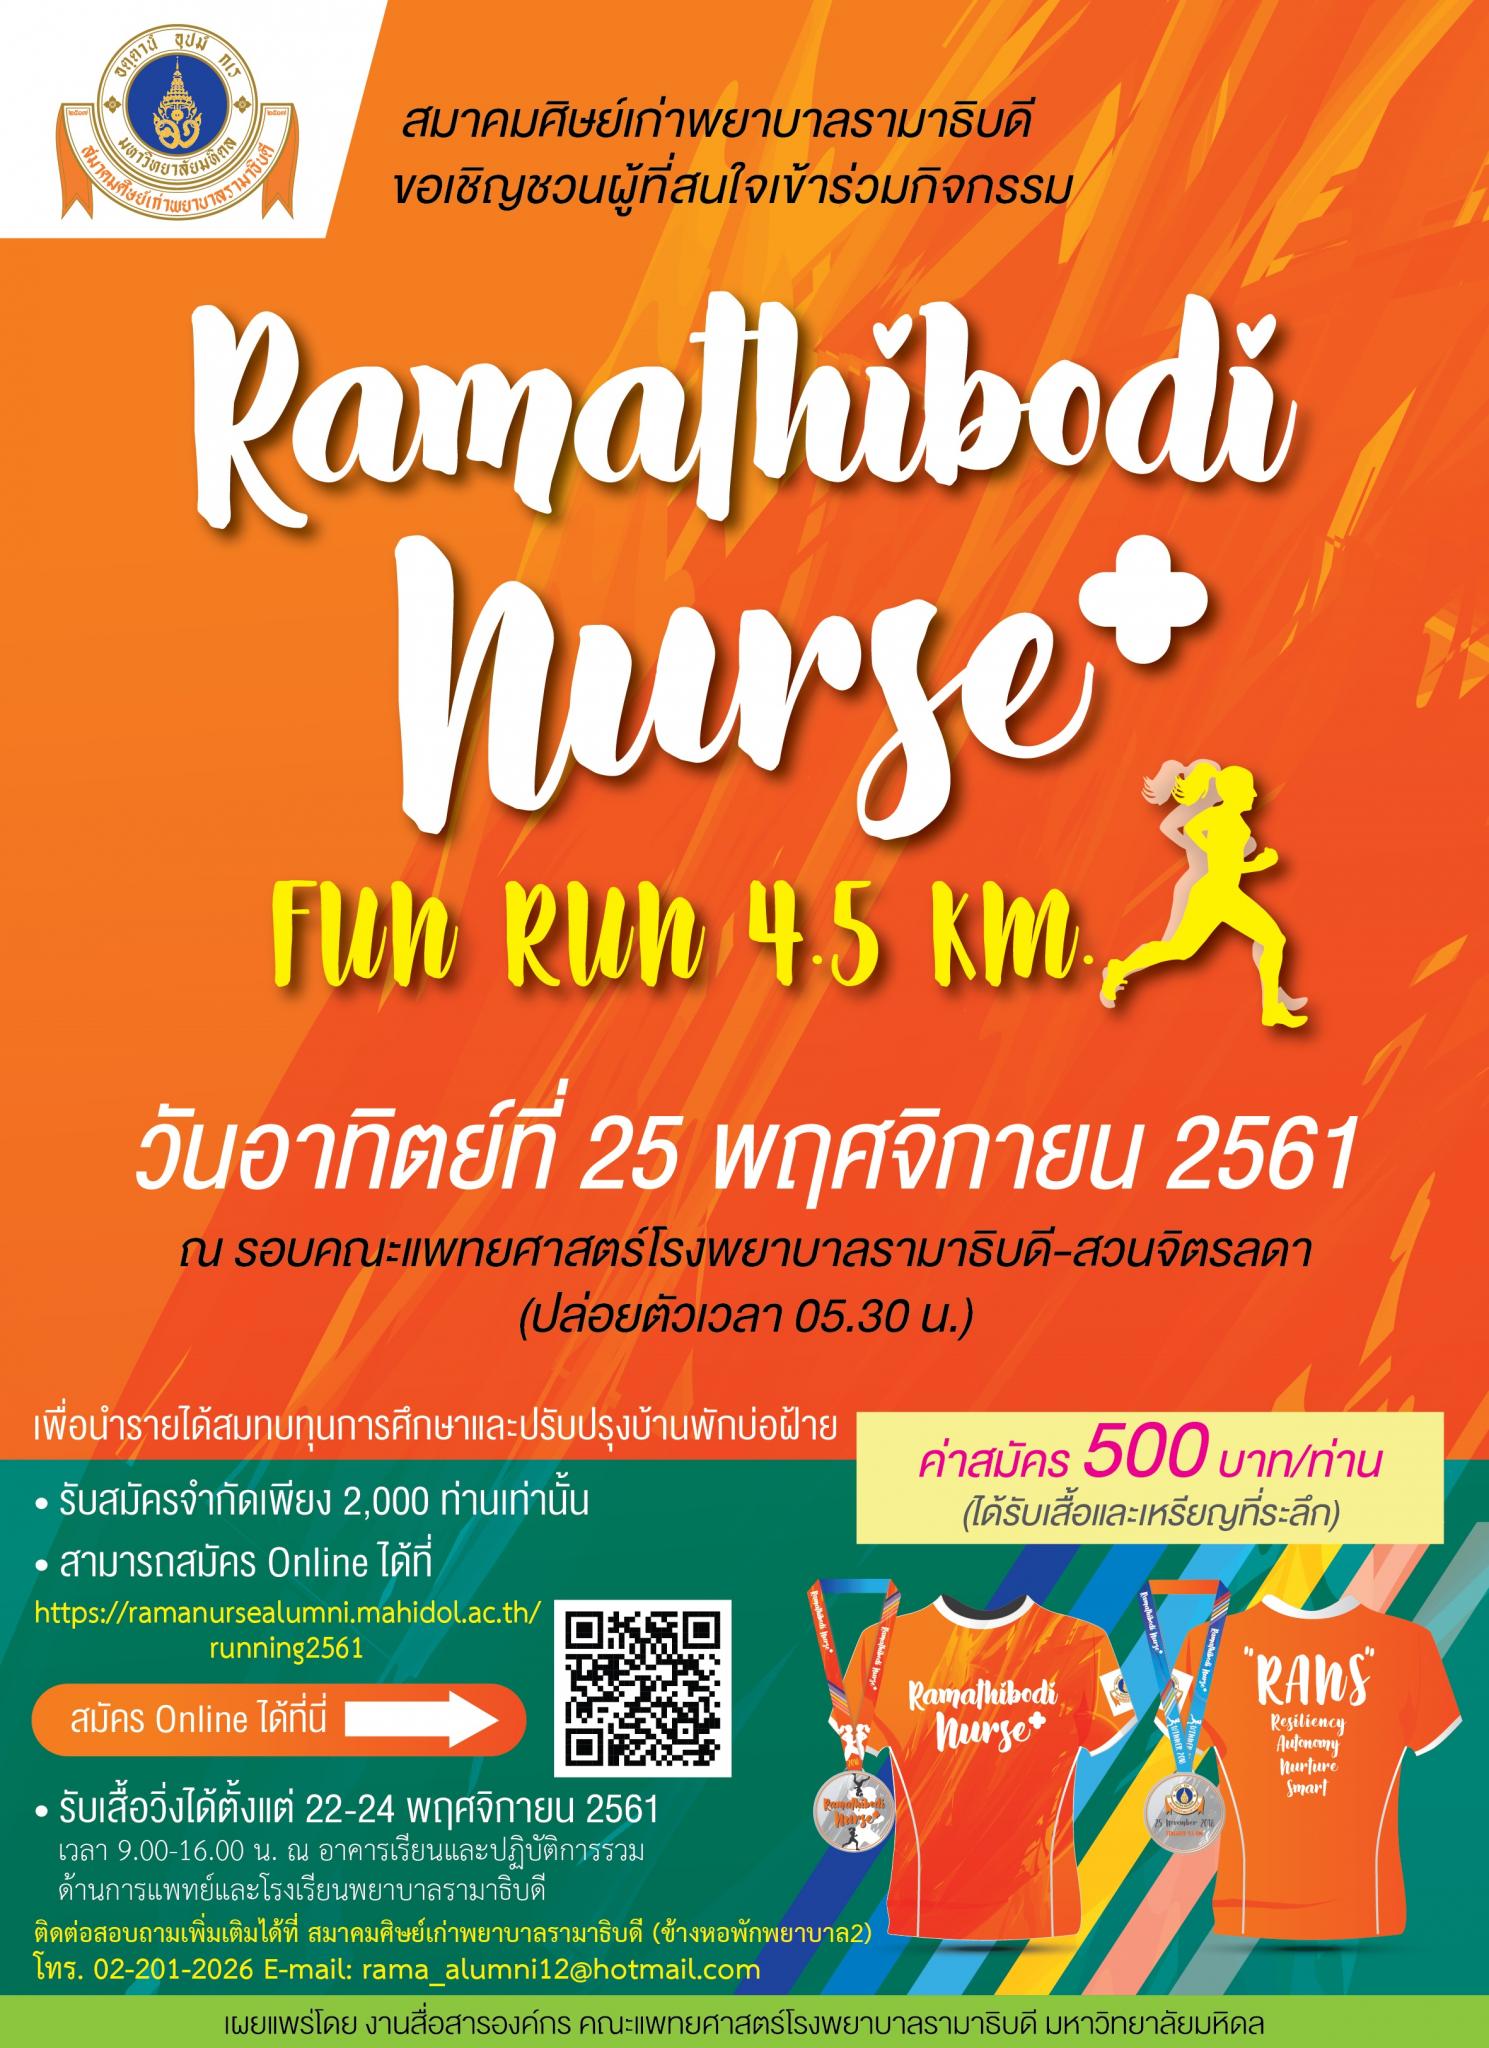 ขอเชิญผู้สนใจเข้าร่วมกิจกรรม Ramathibodi Nurse+ Fun Run 4.5 km.